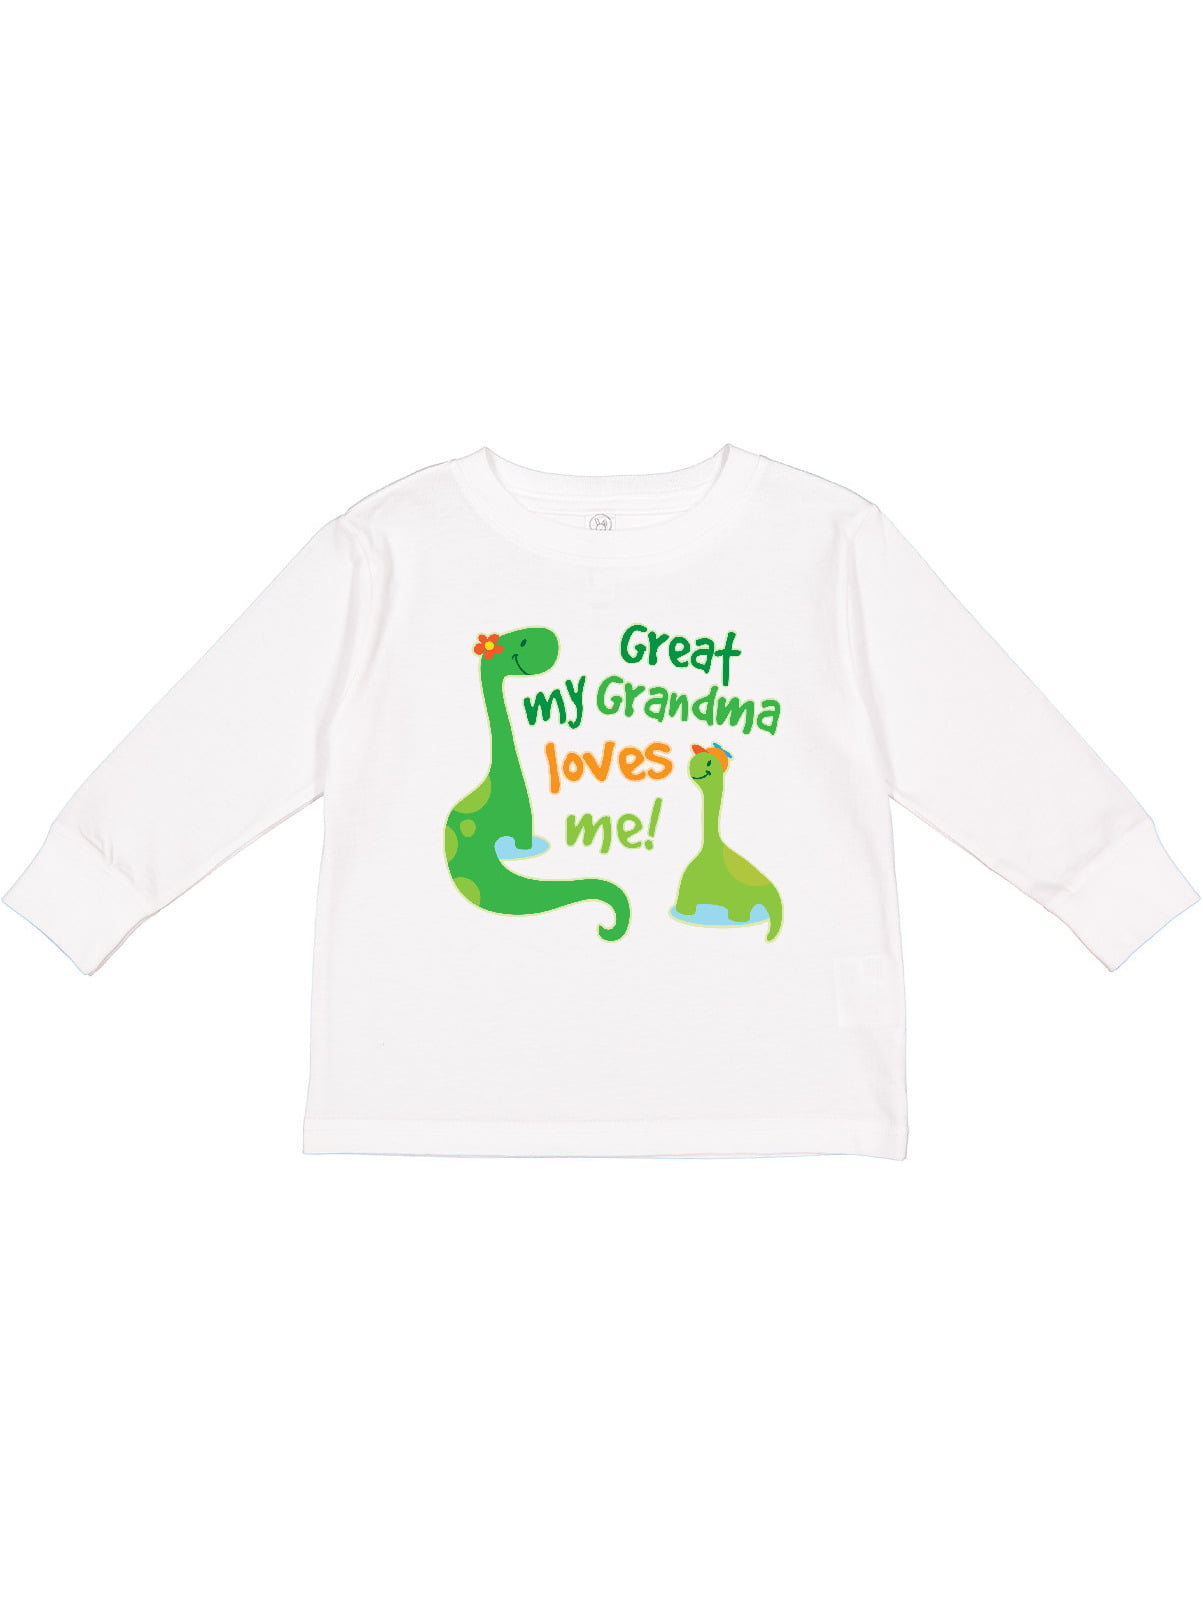 Societee I Love My Great Grandma Little Kids Girls Boys Toddler T-Shirt